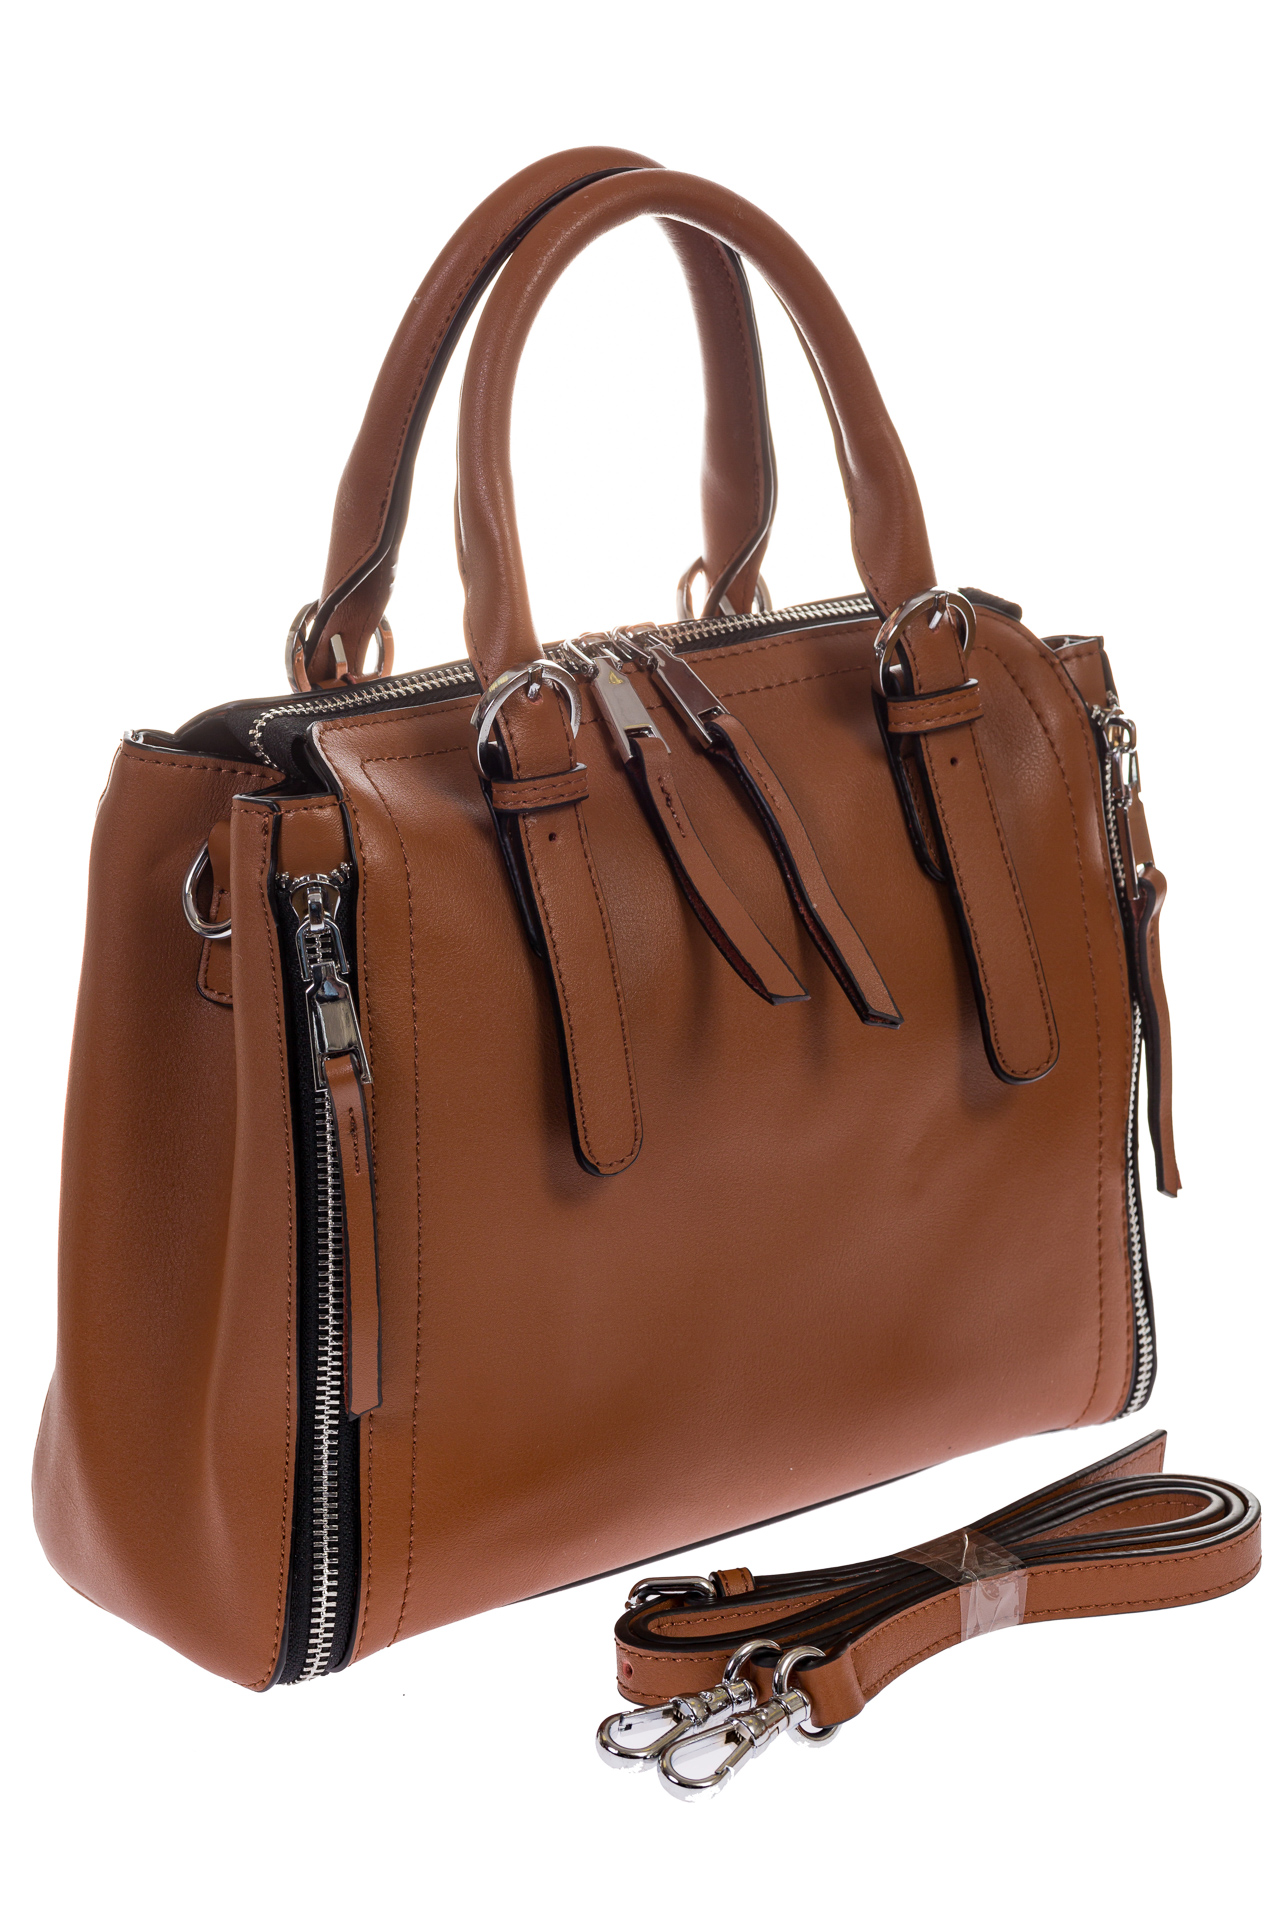 Женский hand-bag коричневого цвета из натуральной кожи для оптовых покупателей